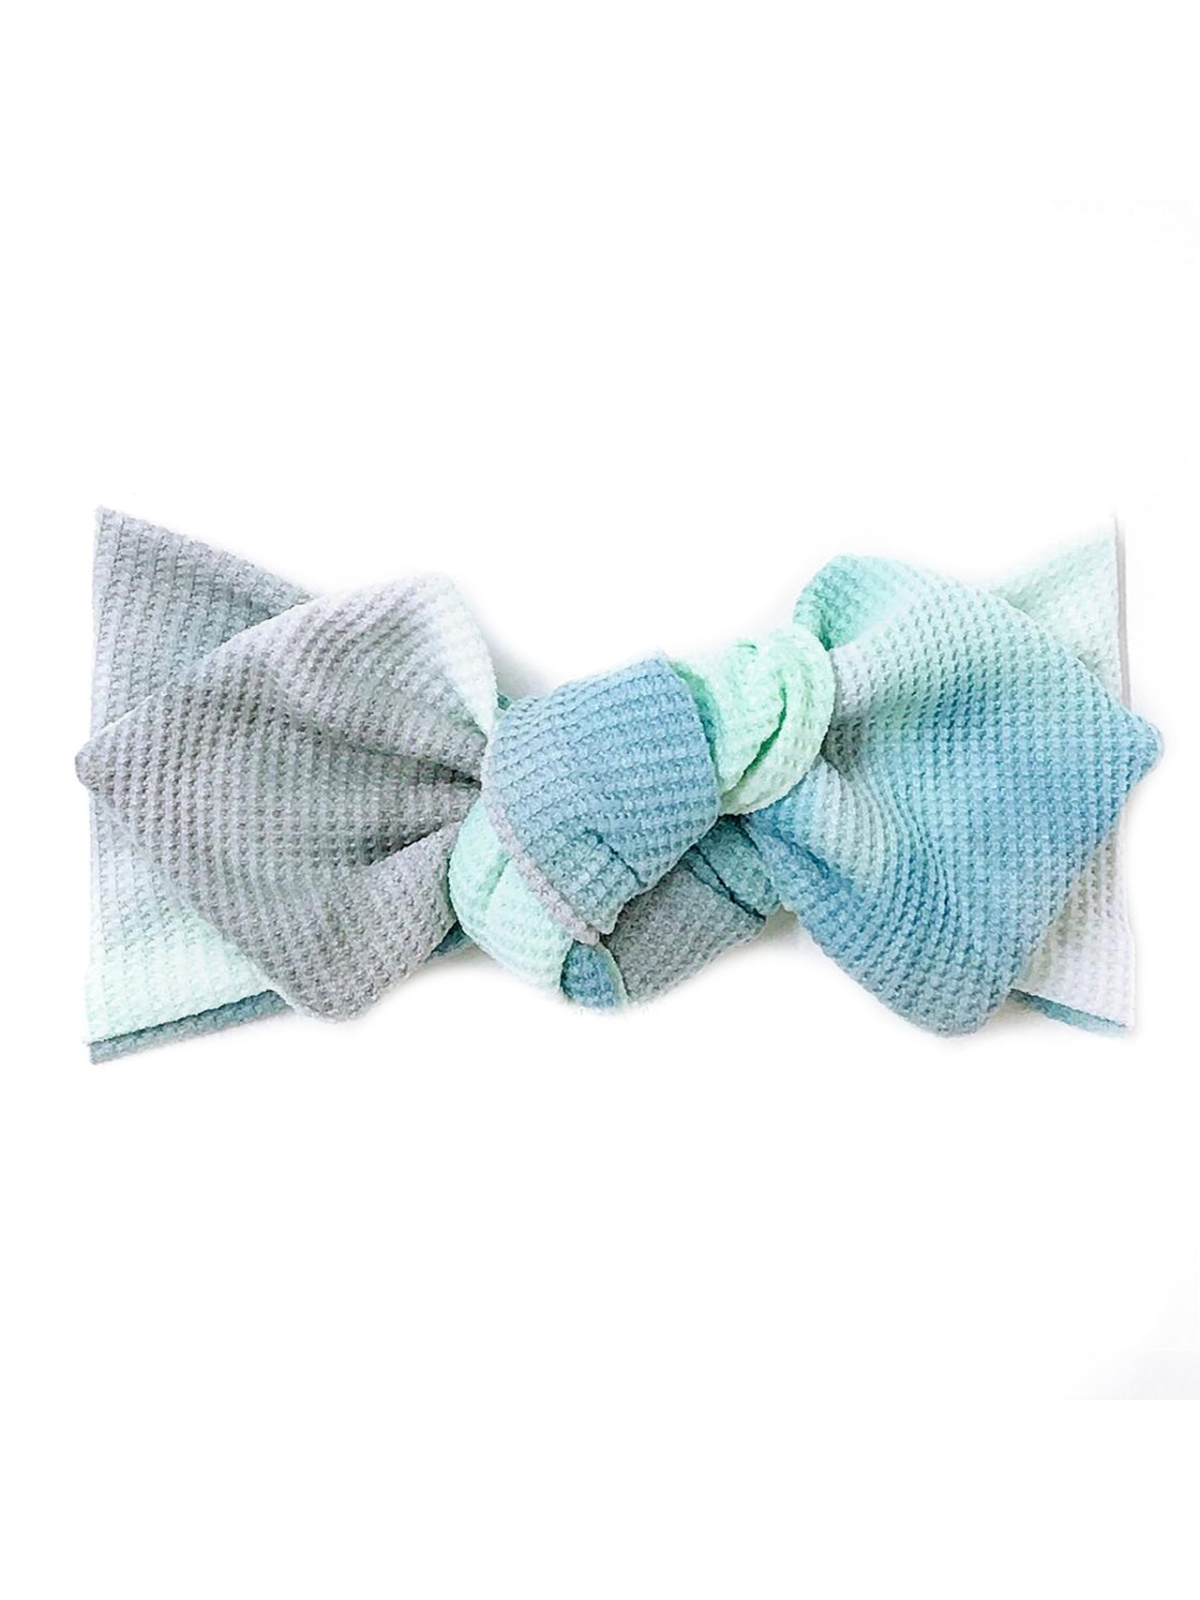 Top Knot Headband, Blue Ocean Tie Dye